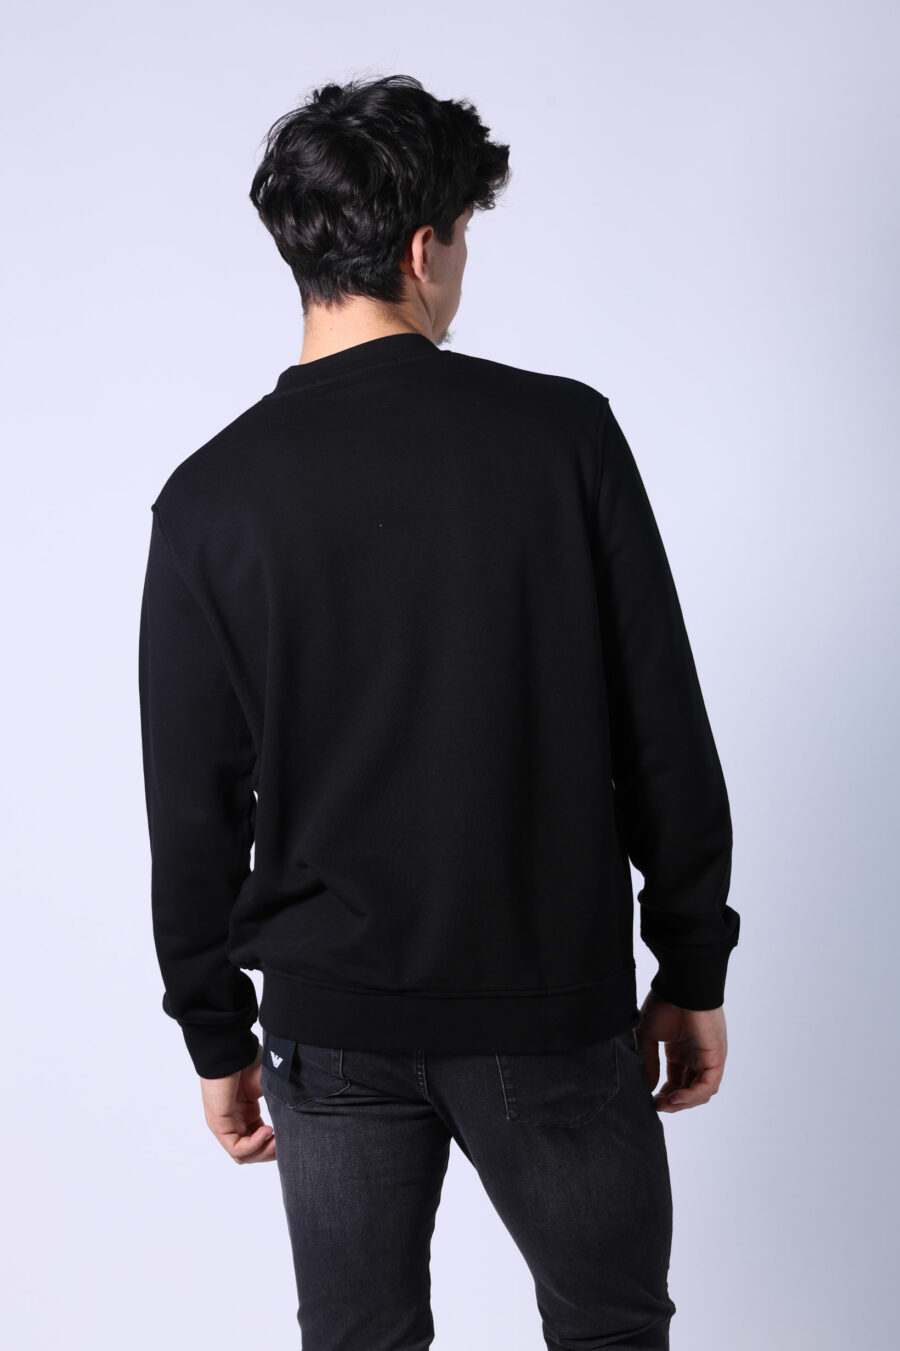 Schwarzes Sweatshirt mit mehrfarbigem "karl silhouette" maxilogue - Untitled Catalog 05746